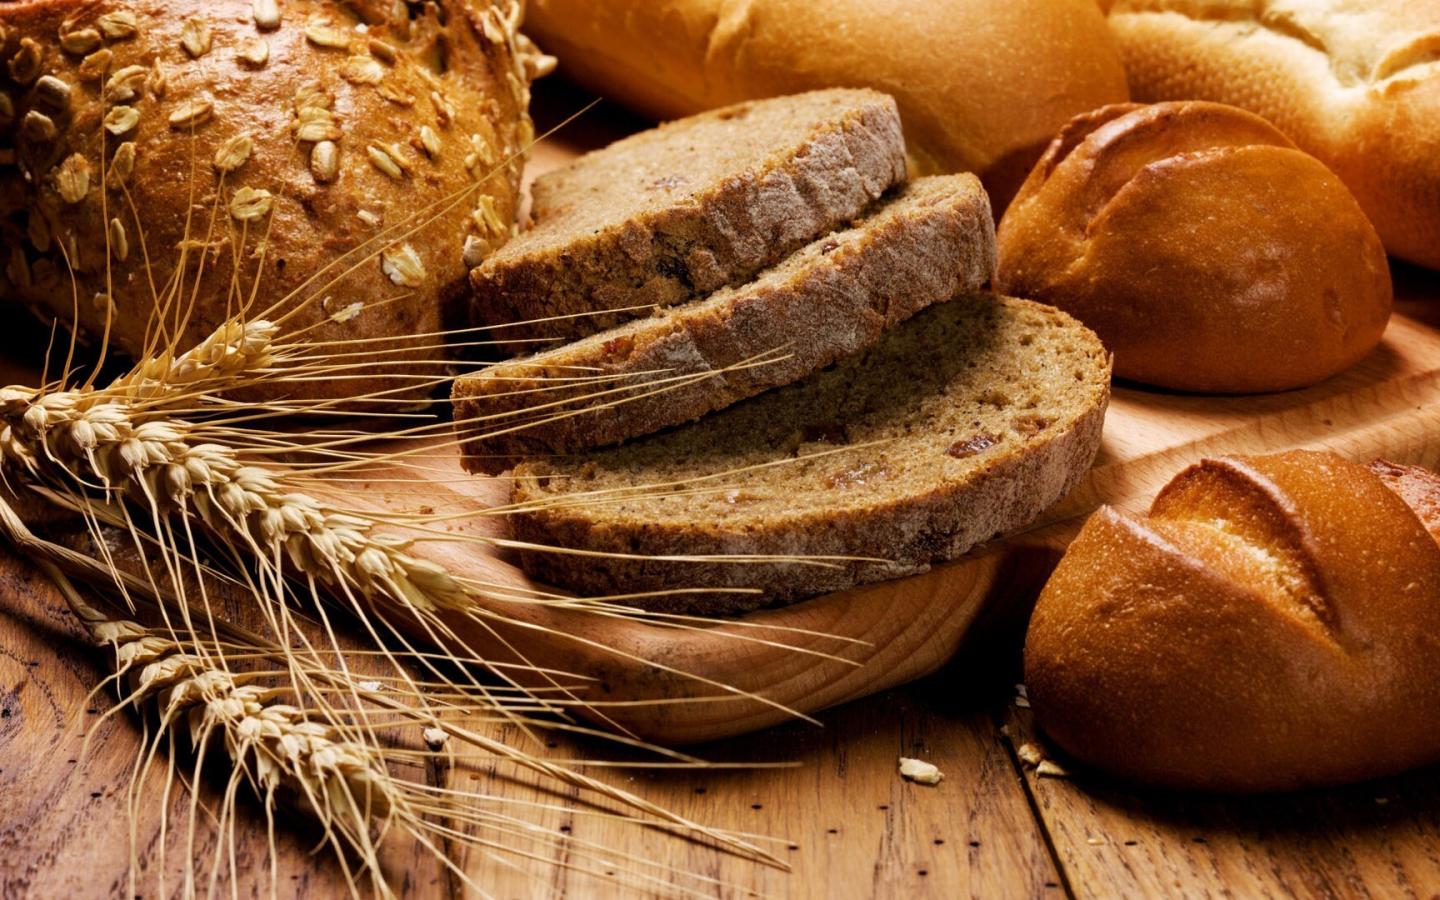 Урок развития речи « Весомое золото хлеба» по сказке К.Г.Паустовского «Теплый хлеб». (5 класс)